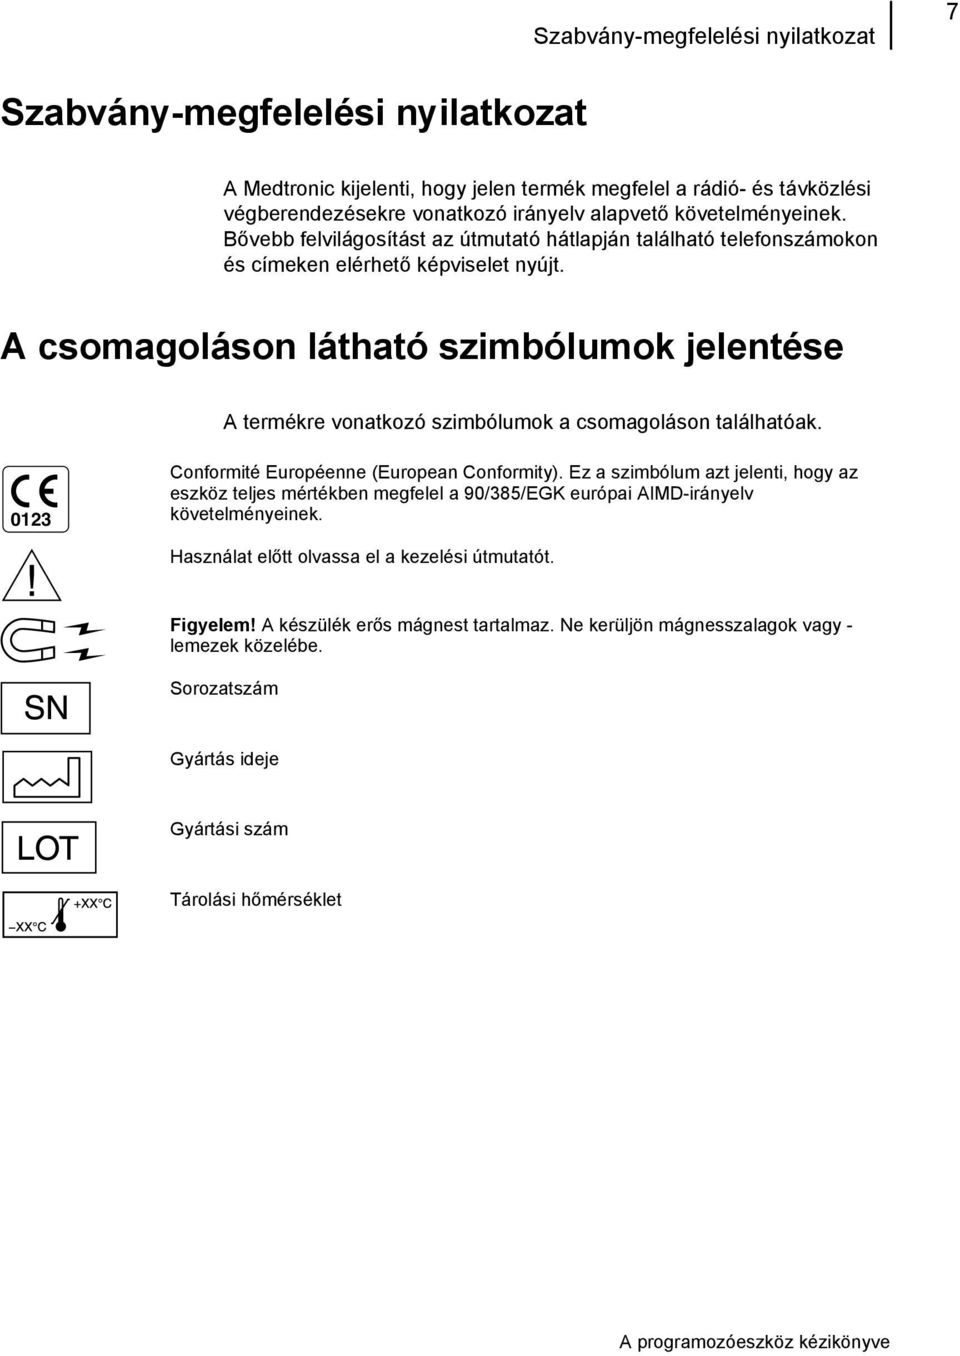 A csomagoláson látható szimbólumok jelentése A termékre vonatkozó szimbólumok a csomagoláson találhatóak. 0123 Conformité Européenne (European Conformity).